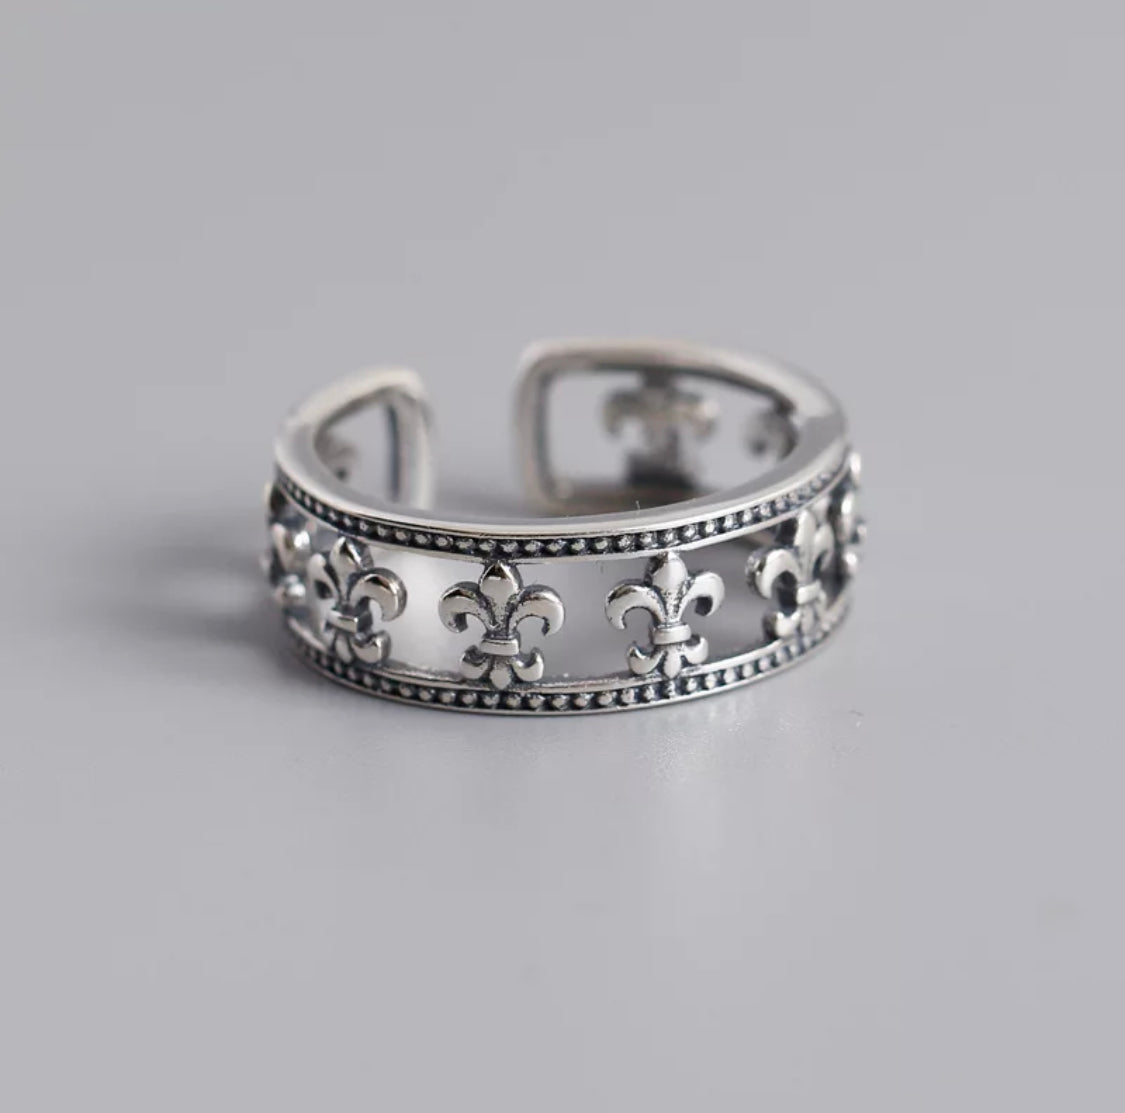 Fleur de lil design 925 silver ring